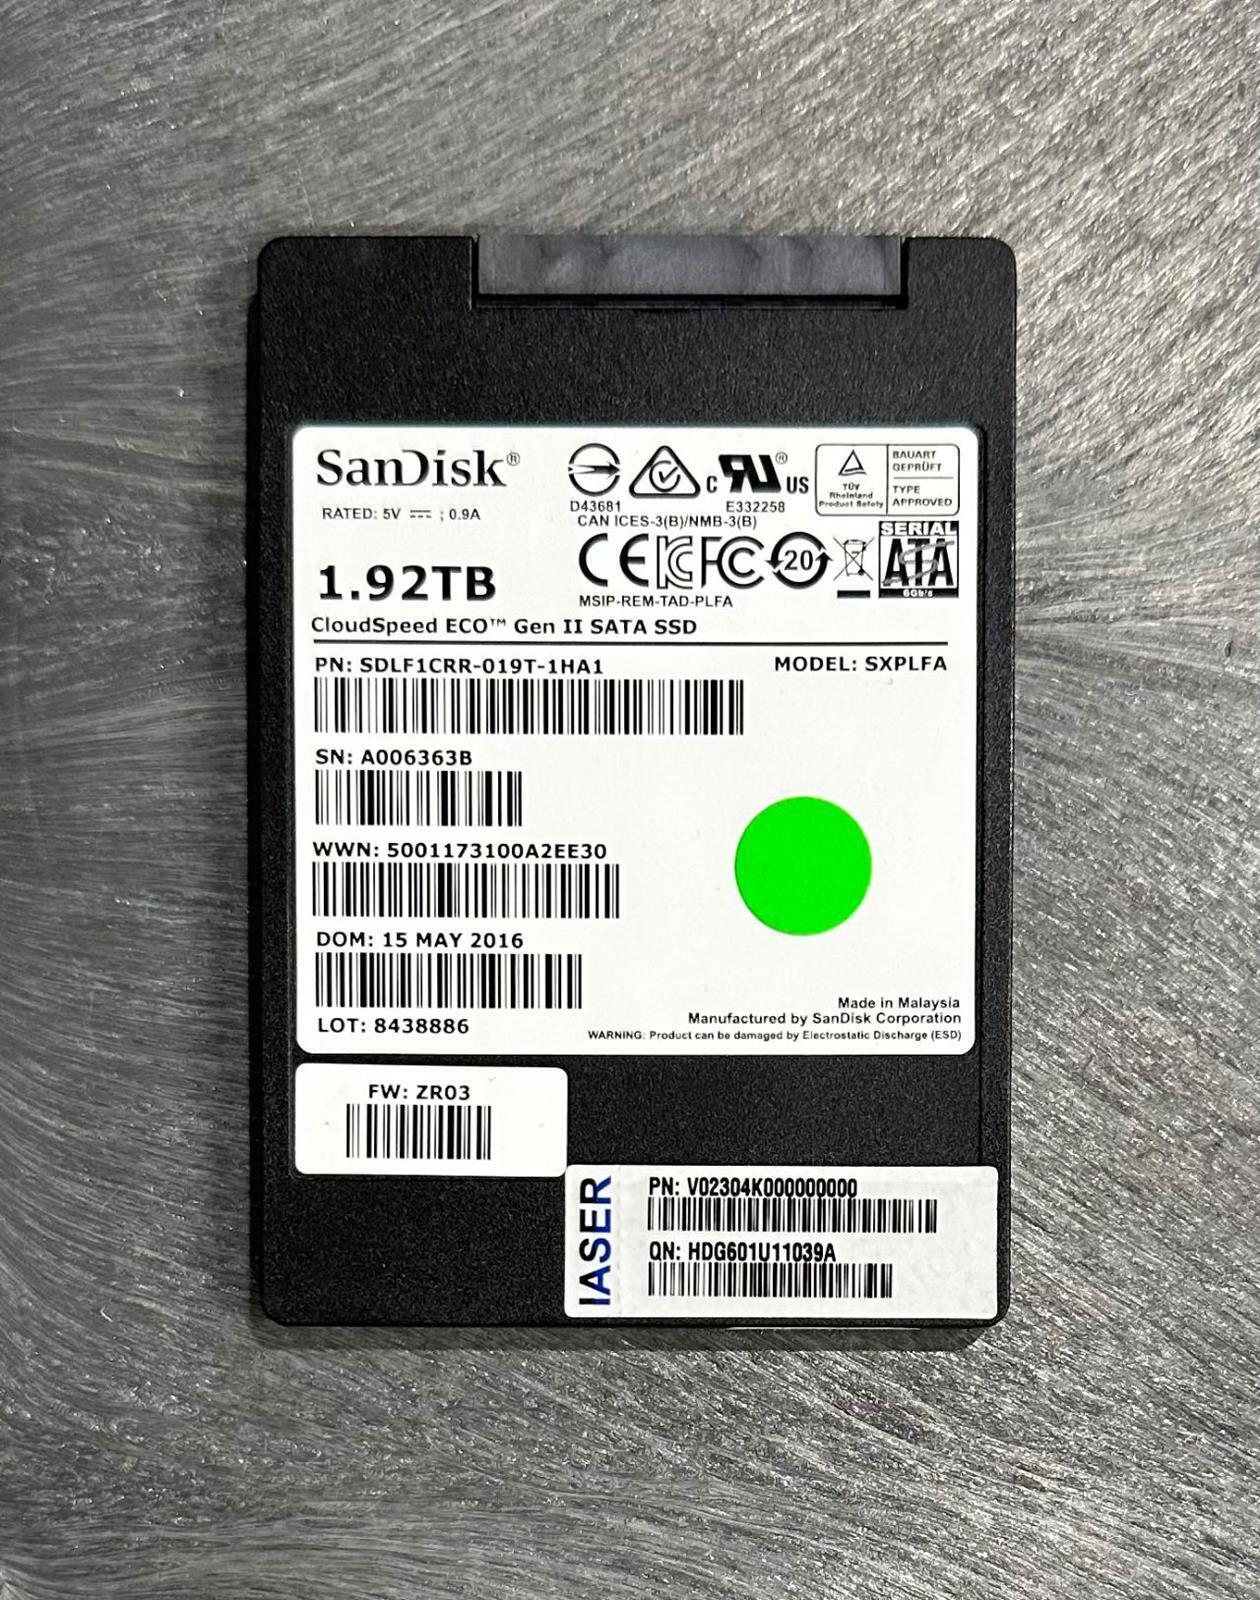 SanDisk CloudSpeed Eco 1.92TB 2TB SATA 2.5